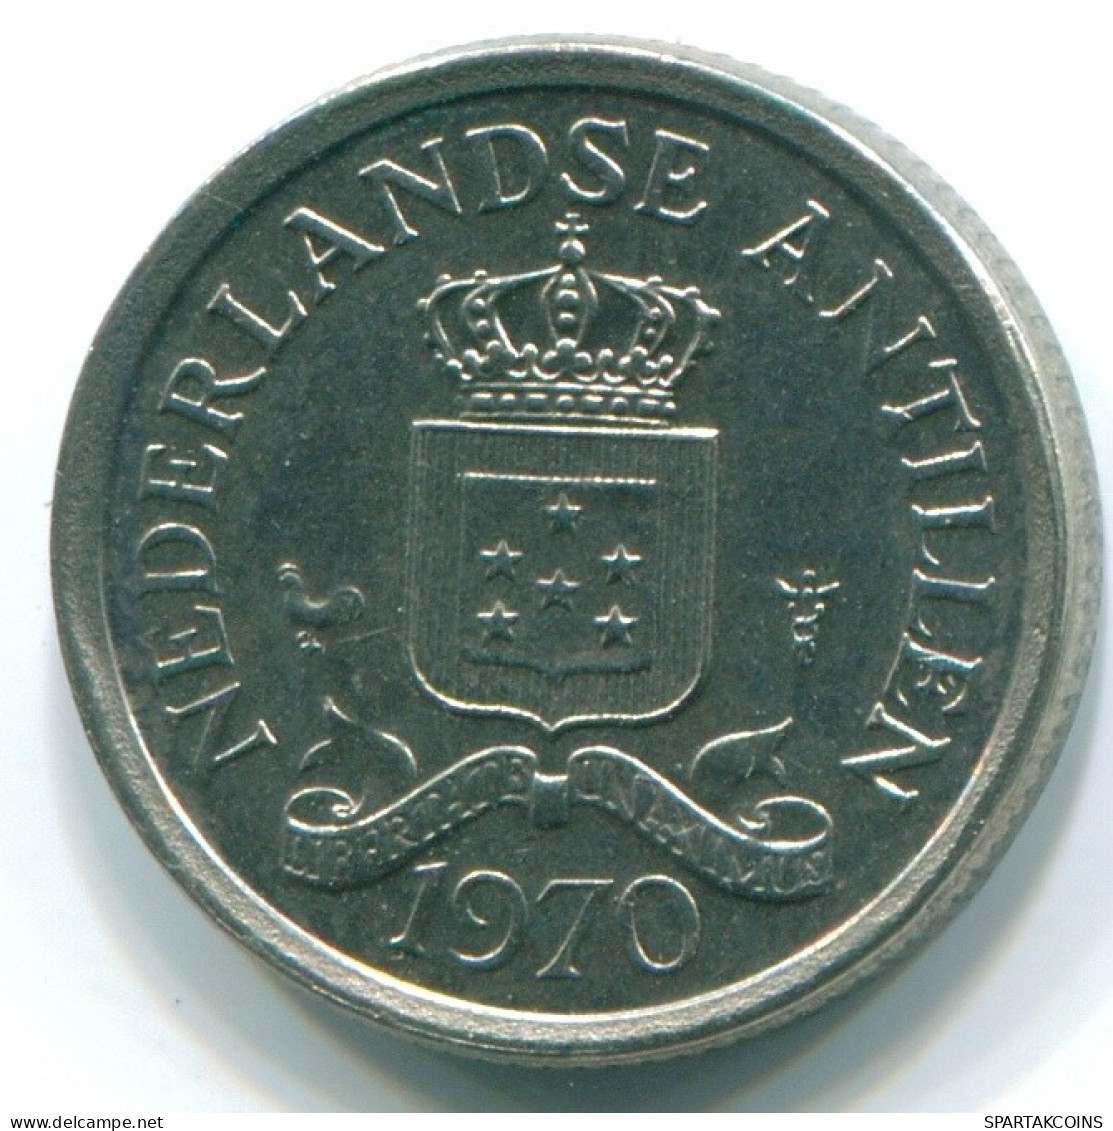 10 CENTS 1970 NETHERLANDS ANTILLES Nickel Colonial Coin #S13367.U.A - Niederländische Antillen